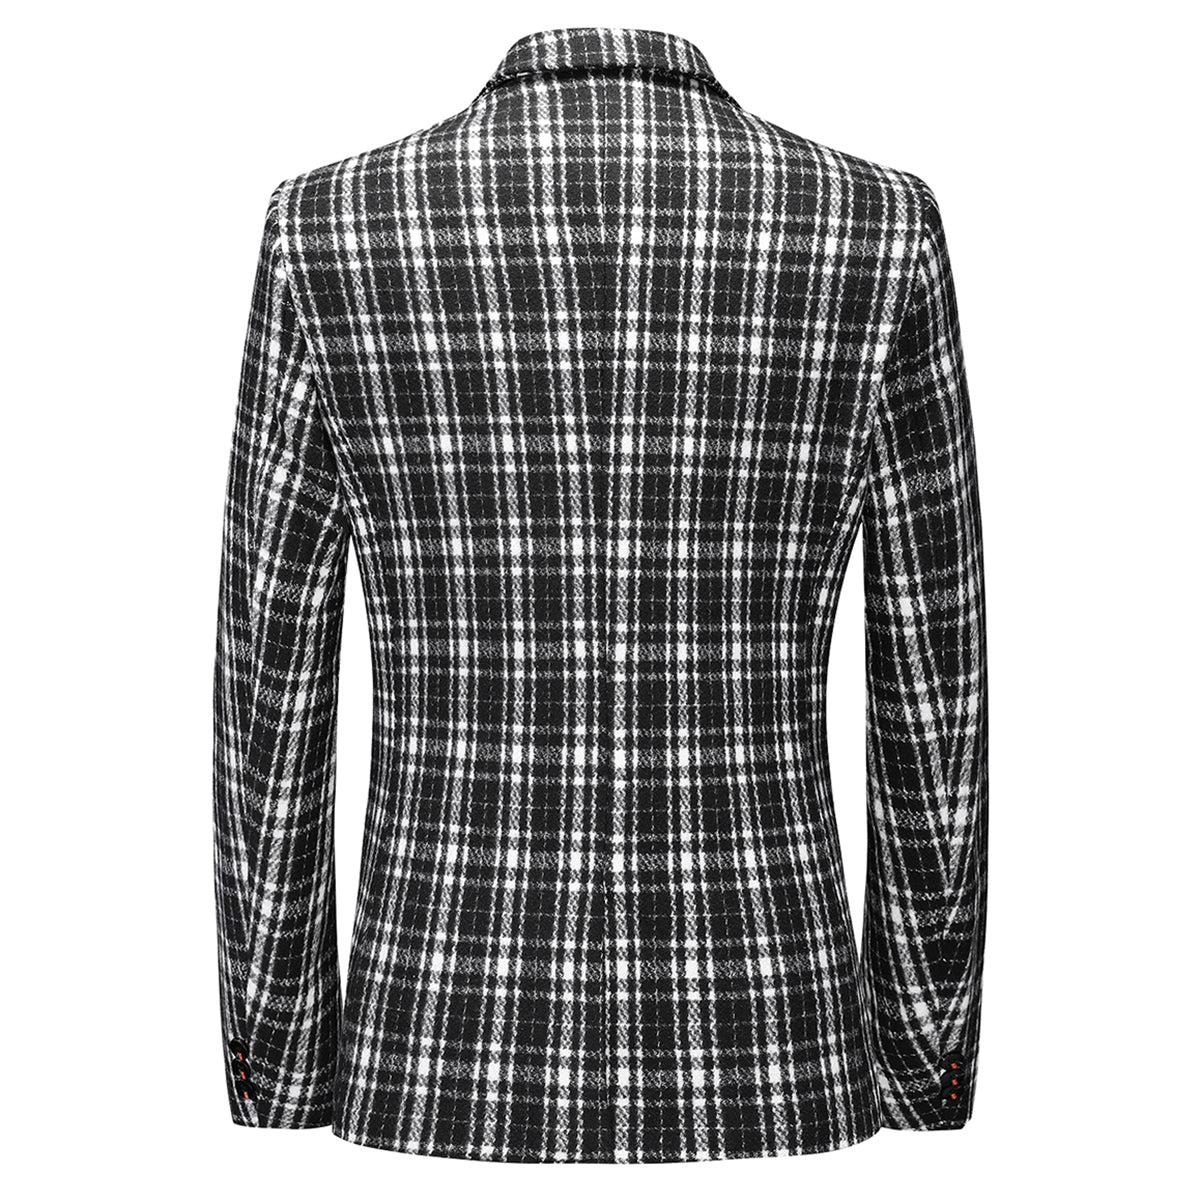 Men's Autumn One Button Casual Plaid Jacket Black